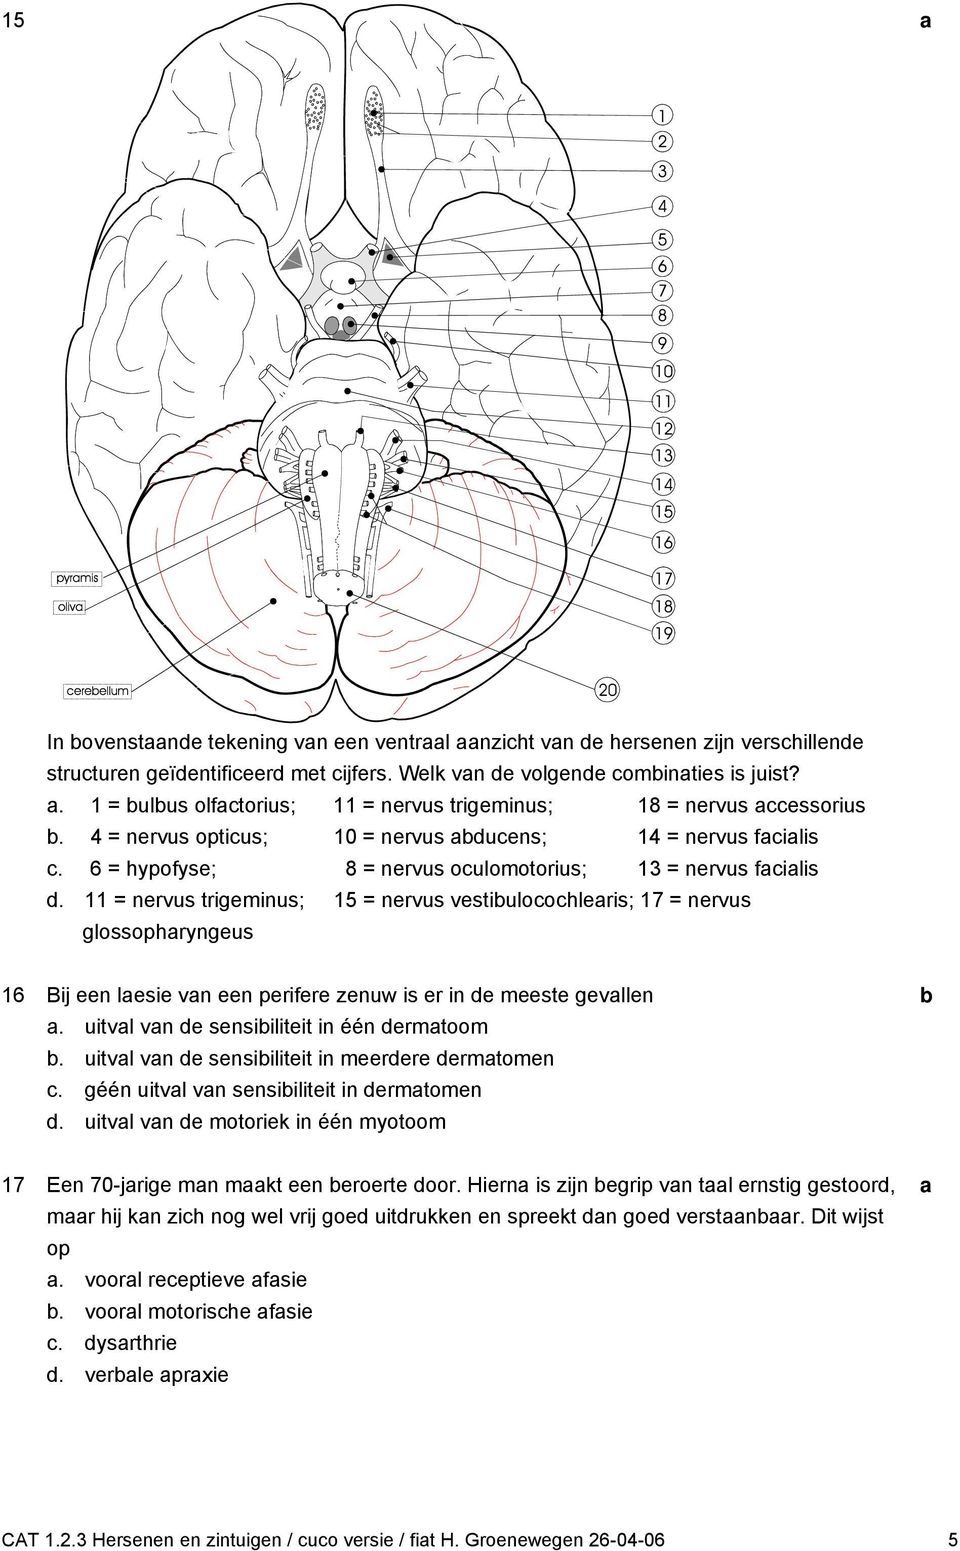 11 = nervus trigeminus; 15 = nervus vestiuloohleris; 17 = nervus glossophryngeus 16 Bij een lesie vn een perifere zenuw is er in e meeste gevllen. uitvl vn e sensiiliteit in één ermtoom.